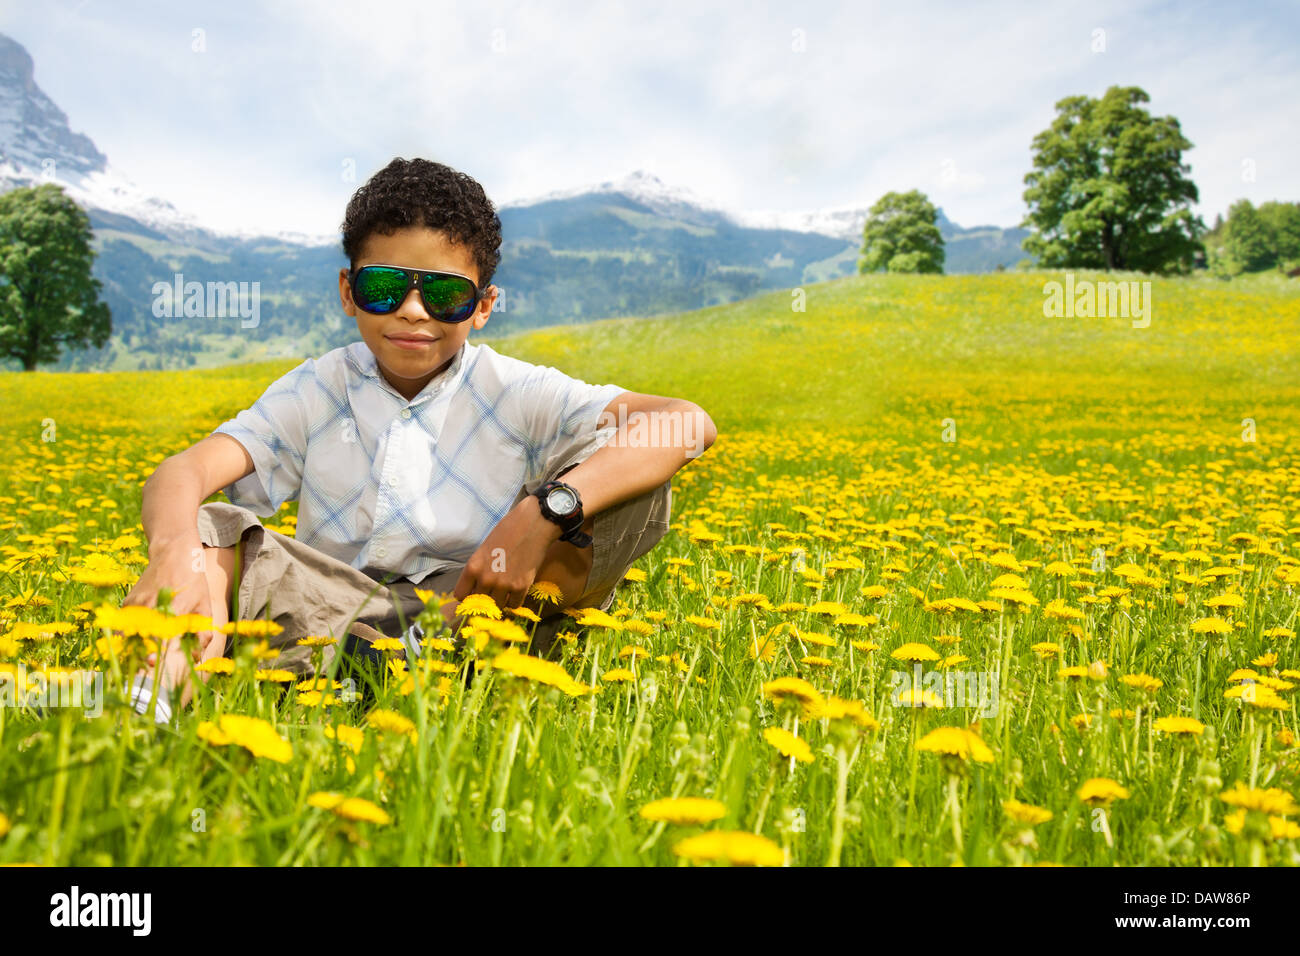 Glücklich kleine schwarze Junge in Sonnenbrillen sitzen auf dem Löwenzahn Gebiet mit Bergen im Hintergrund Stockfoto